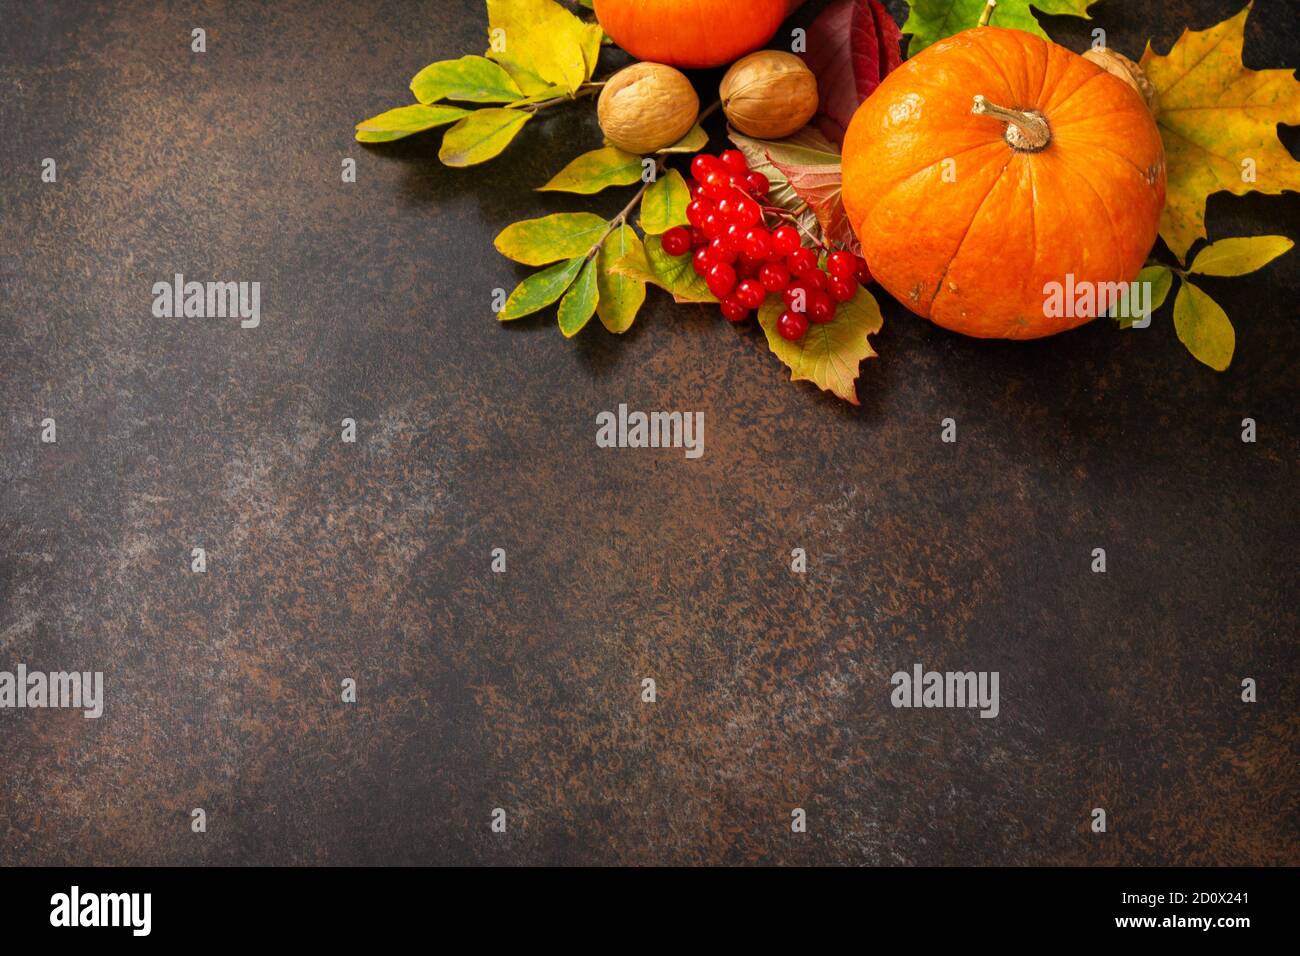 Fondo del concepto estacional. Fondo de otoño con hojas de arce de otoño, calabaza, frutos secos y bayas sobre un fondo de pizarra. Espacio de copia. Foto de stock